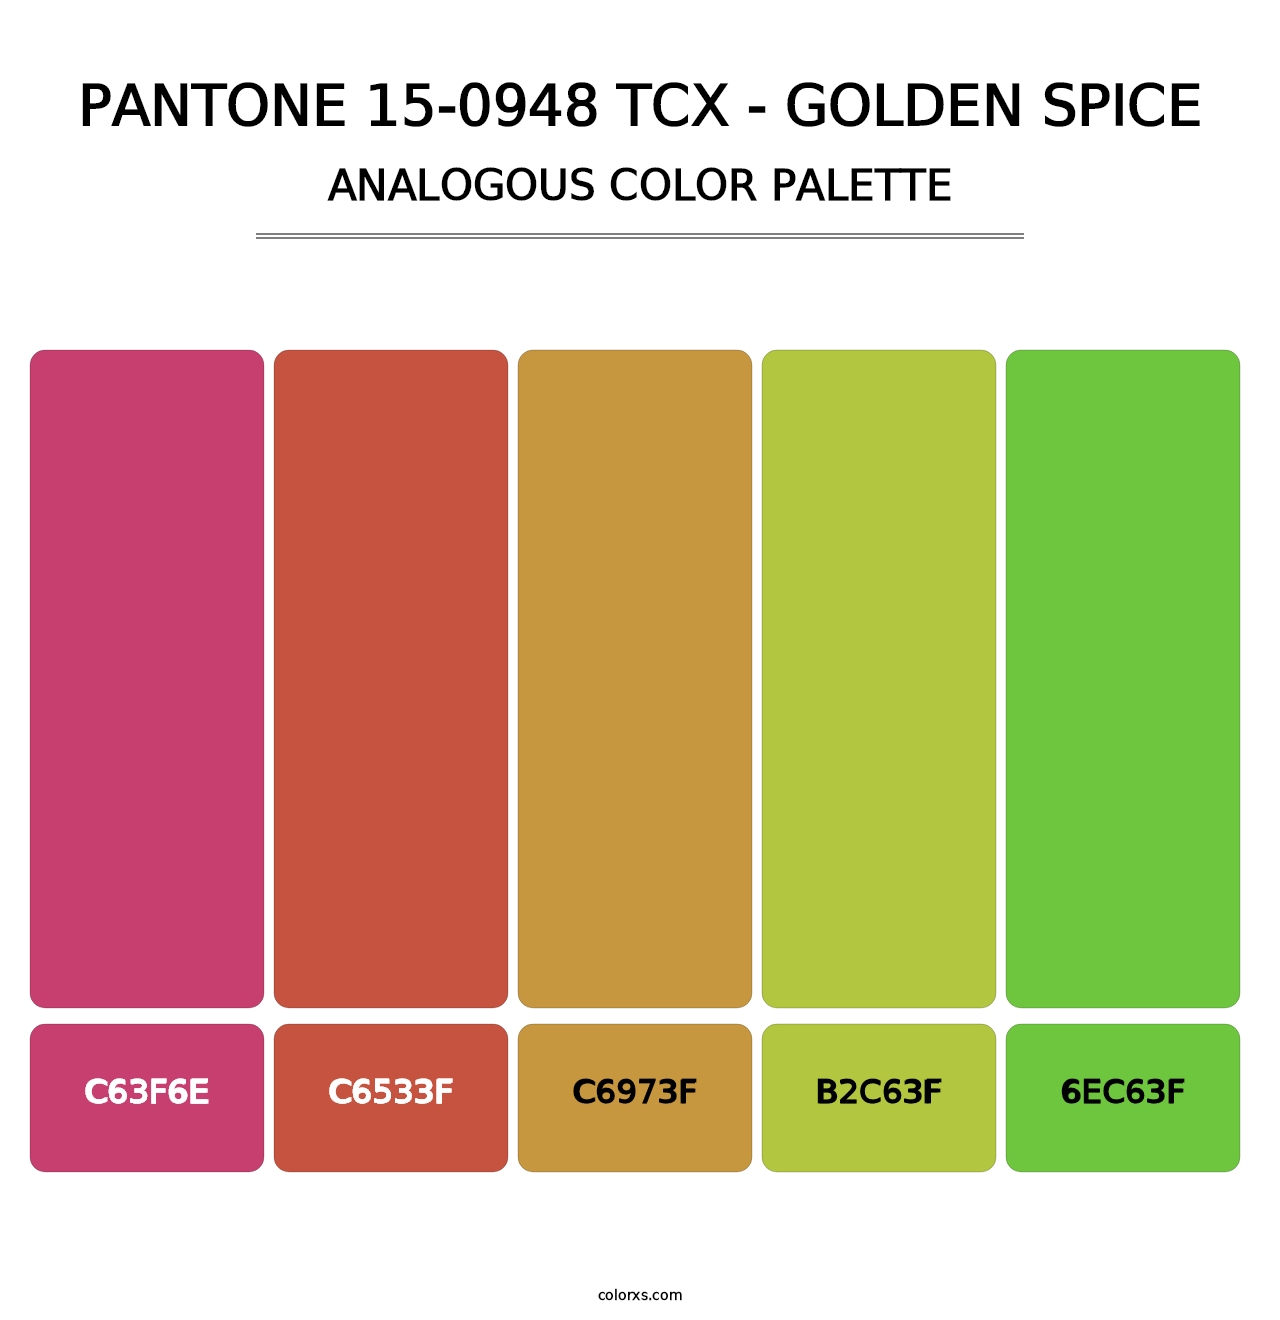 PANTONE 15-0948 TCX - Golden Spice - Analogous Color Palette